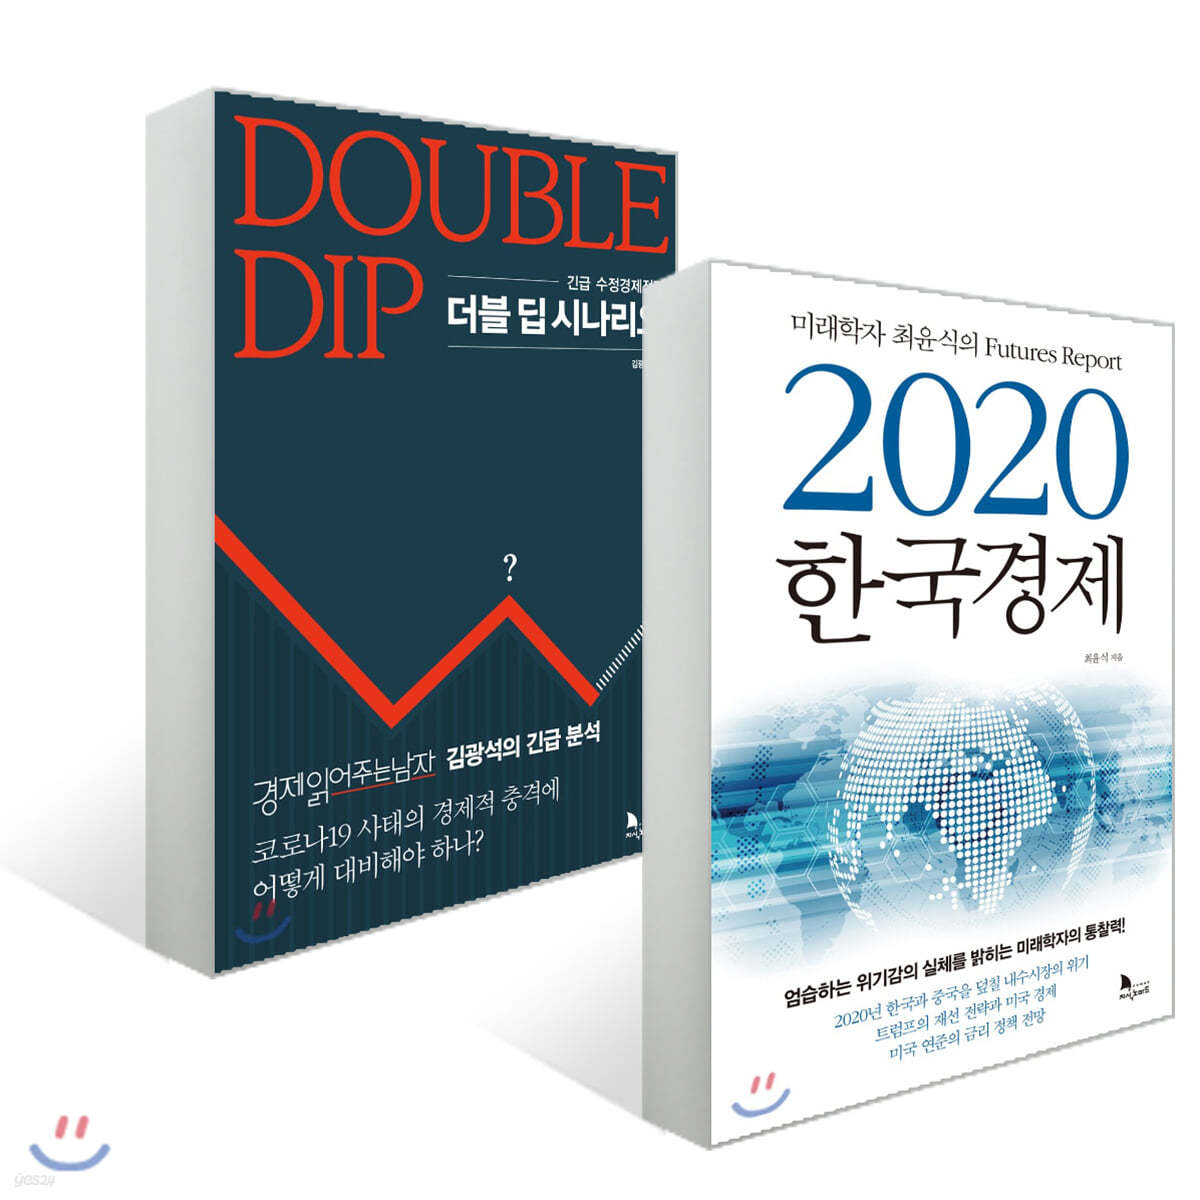 2020 한국경제 + 더블 딥 시나리오